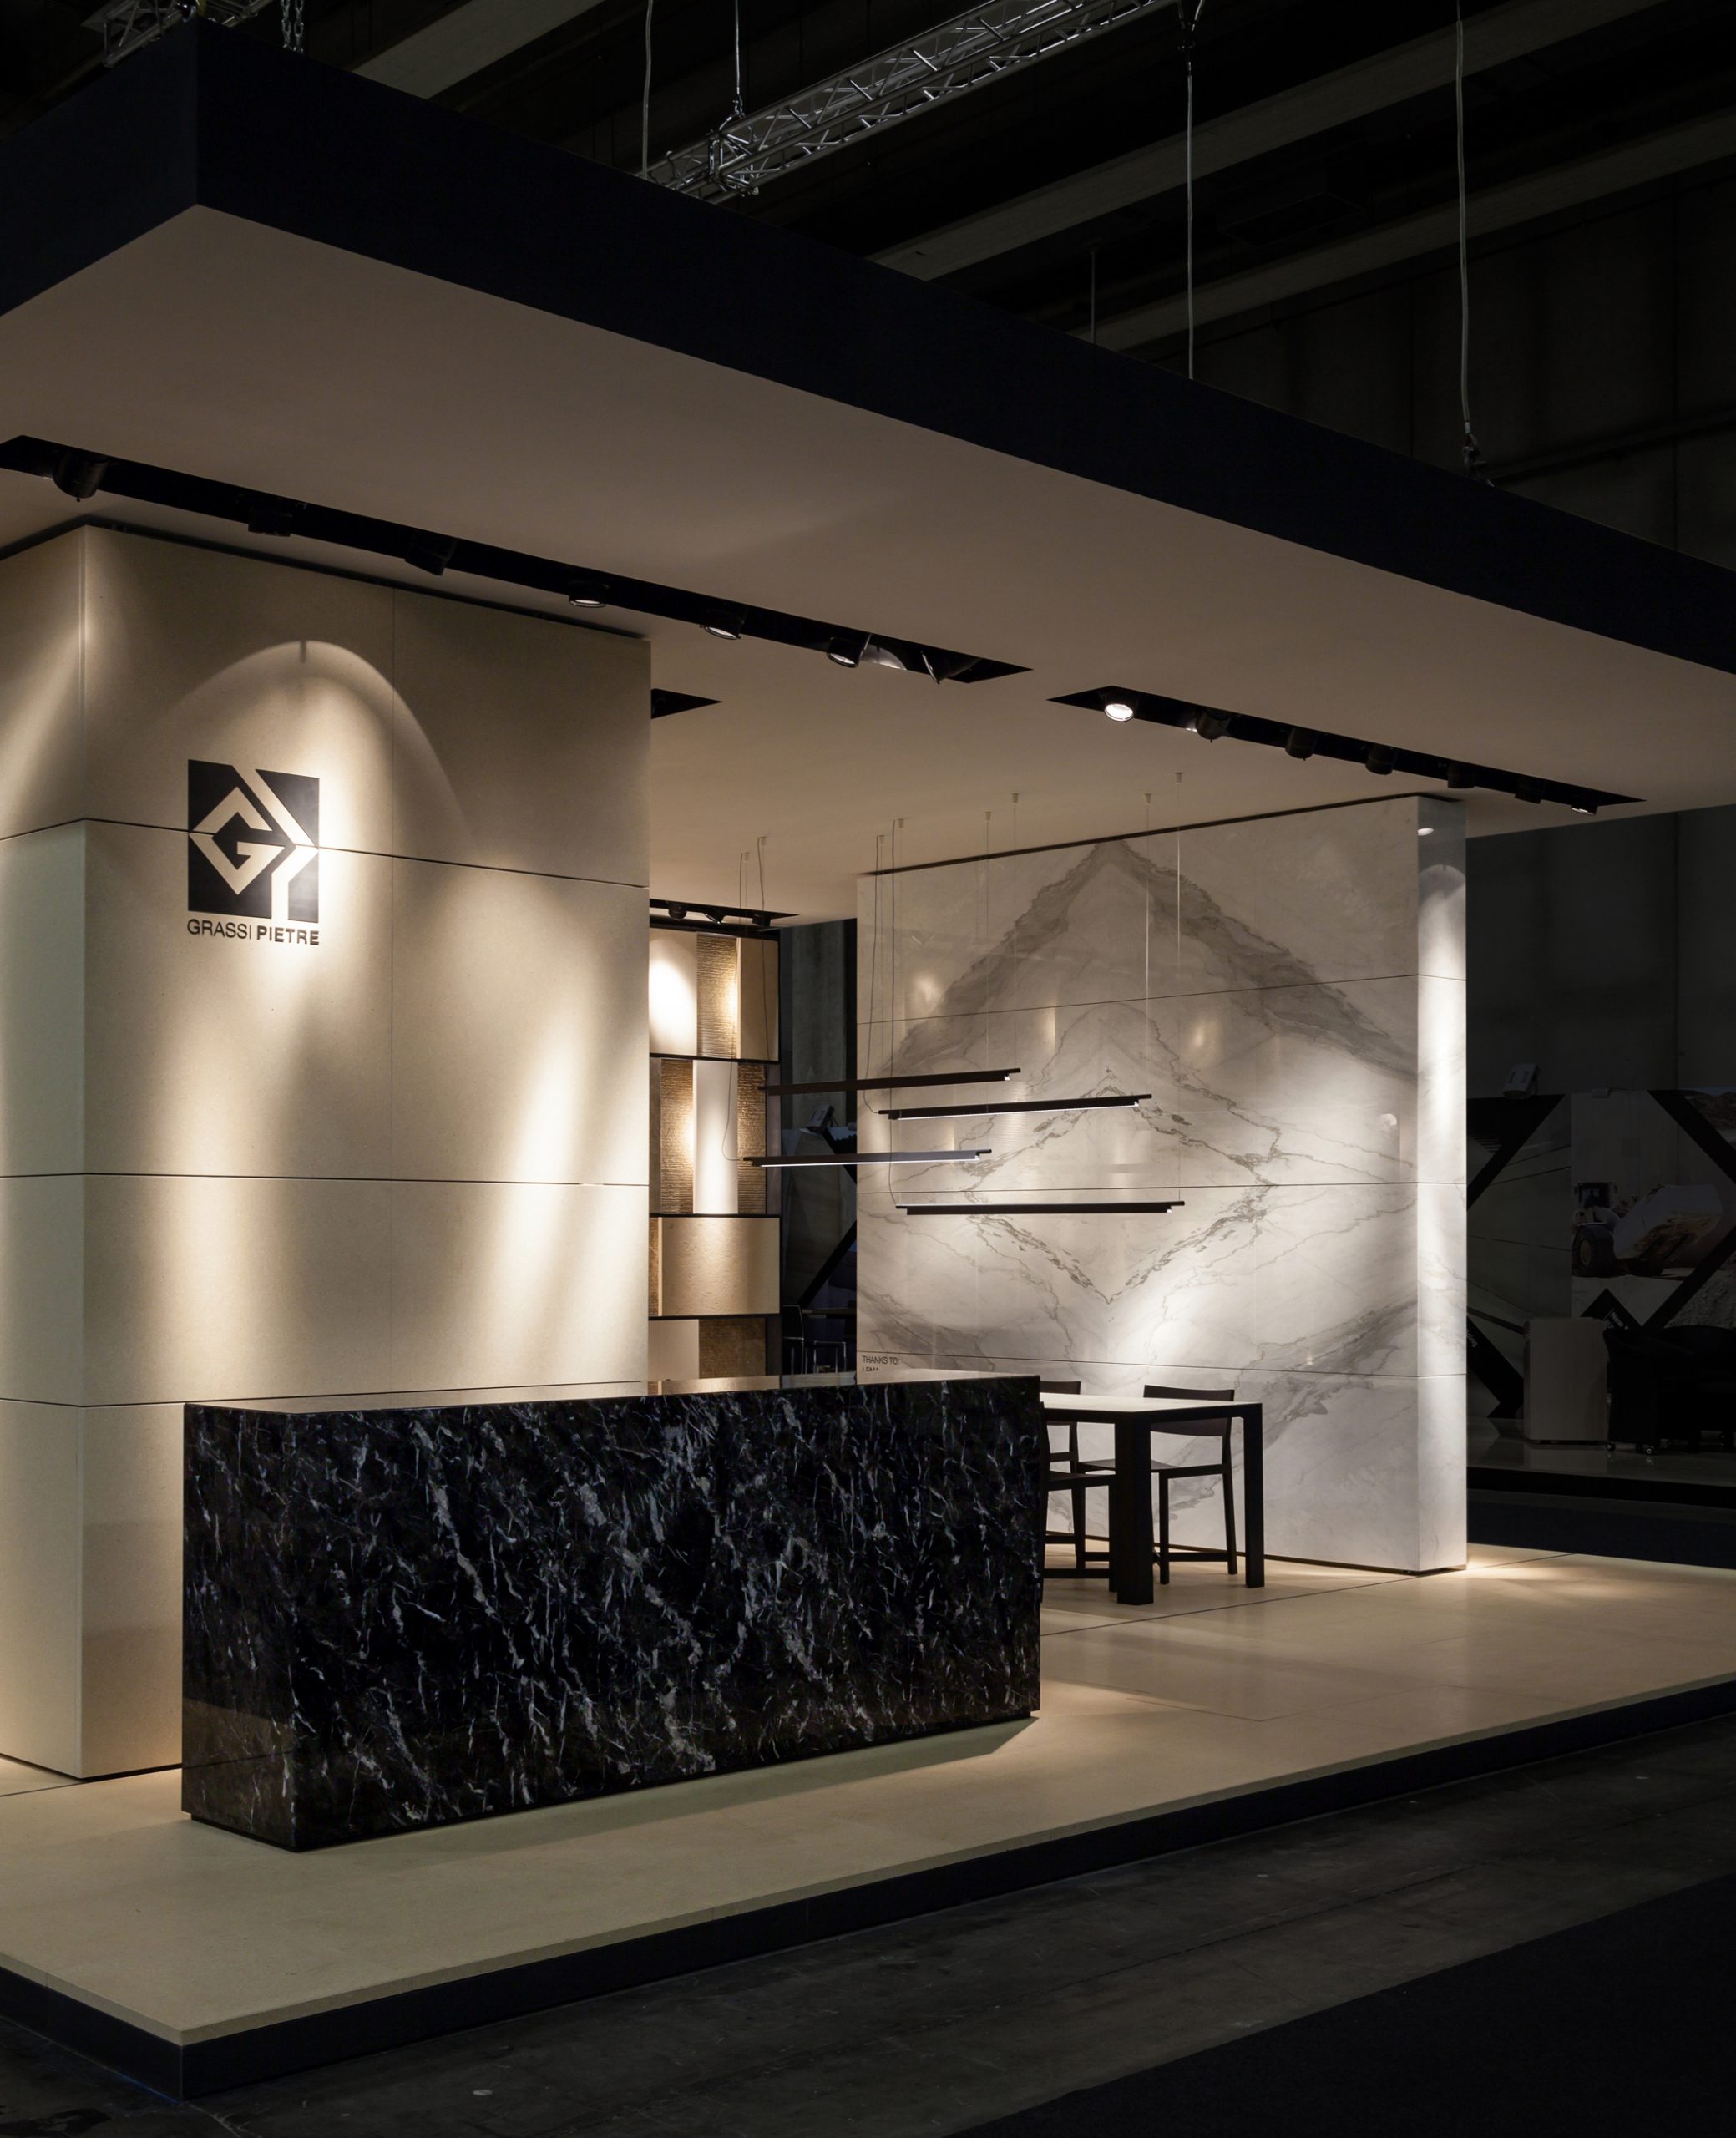 Marmomac 2016 booth designed by Debiasi Sandri for Grassi Pietre